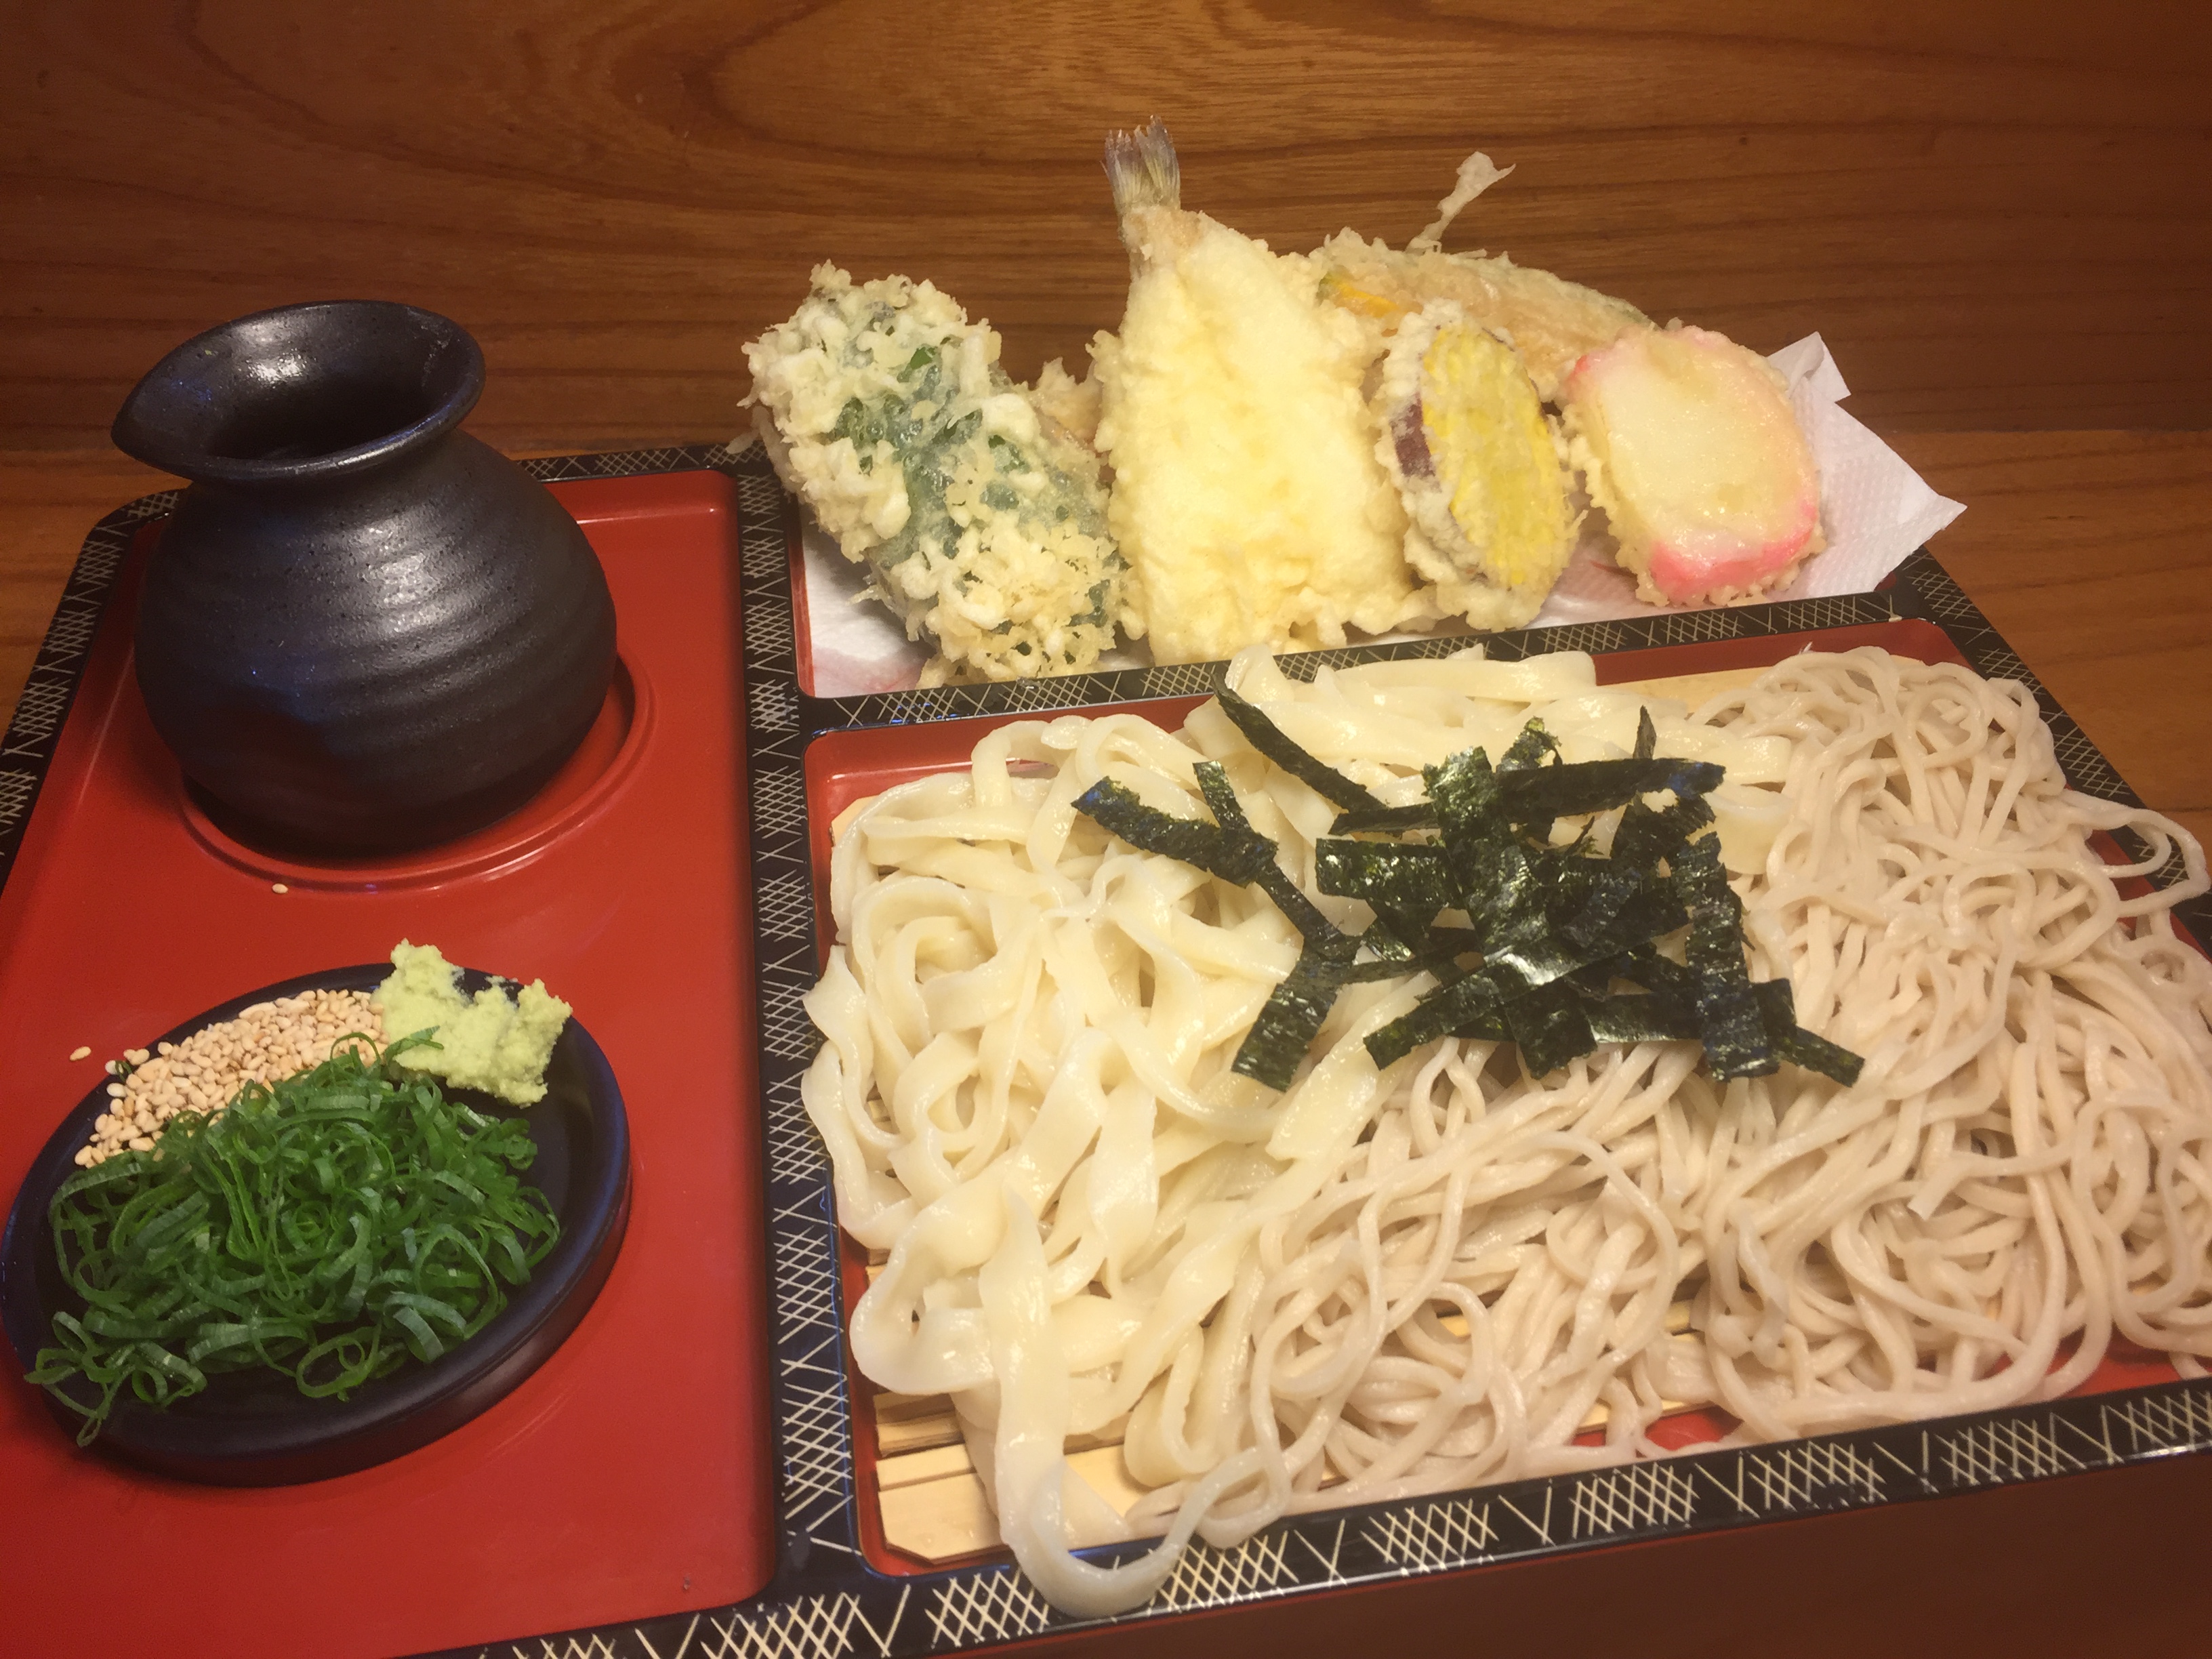 当店1番人気の合い盛り天ざるです。
そば、うどん半分ずつ、季節の野菜と魚介の天ぷら7種盛りです。